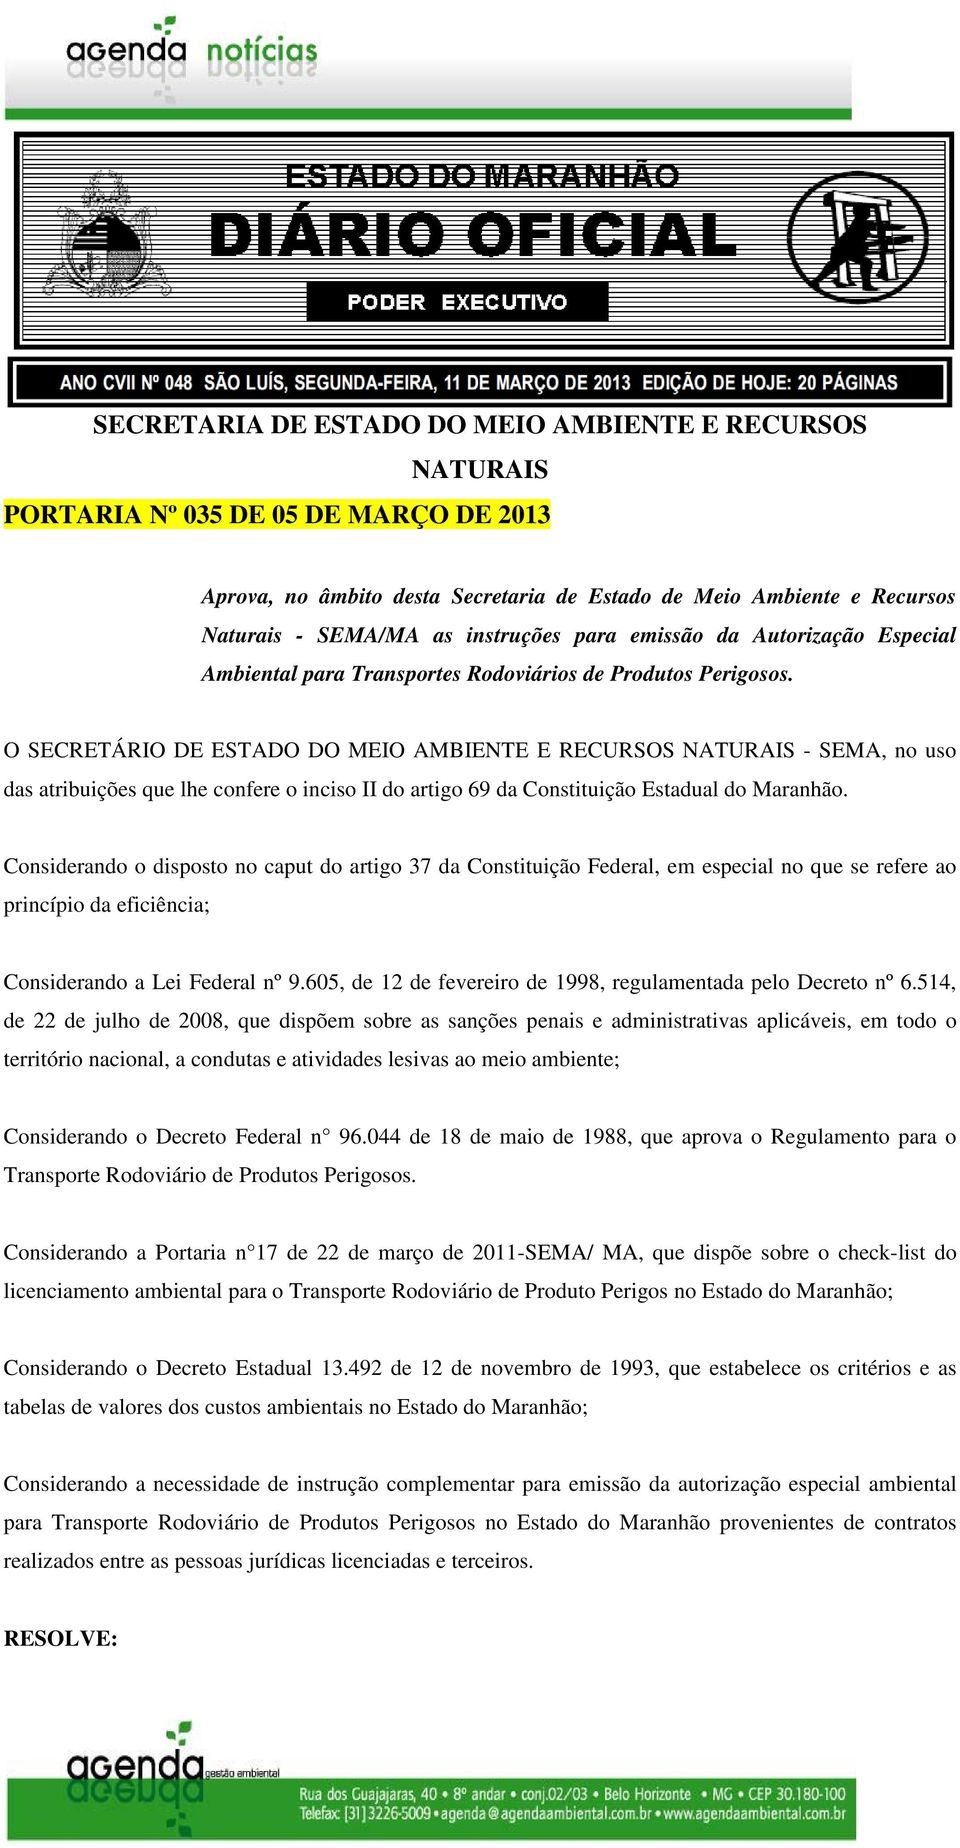 O SECRETÁRIO DE ESTADO DO MEIO AMBIENTE E RECURSOS NATURAIS - SEMA, no uso das atribuições que lhe confere o inciso II do artigo 69 da Constituição Estadual do Maranhão.